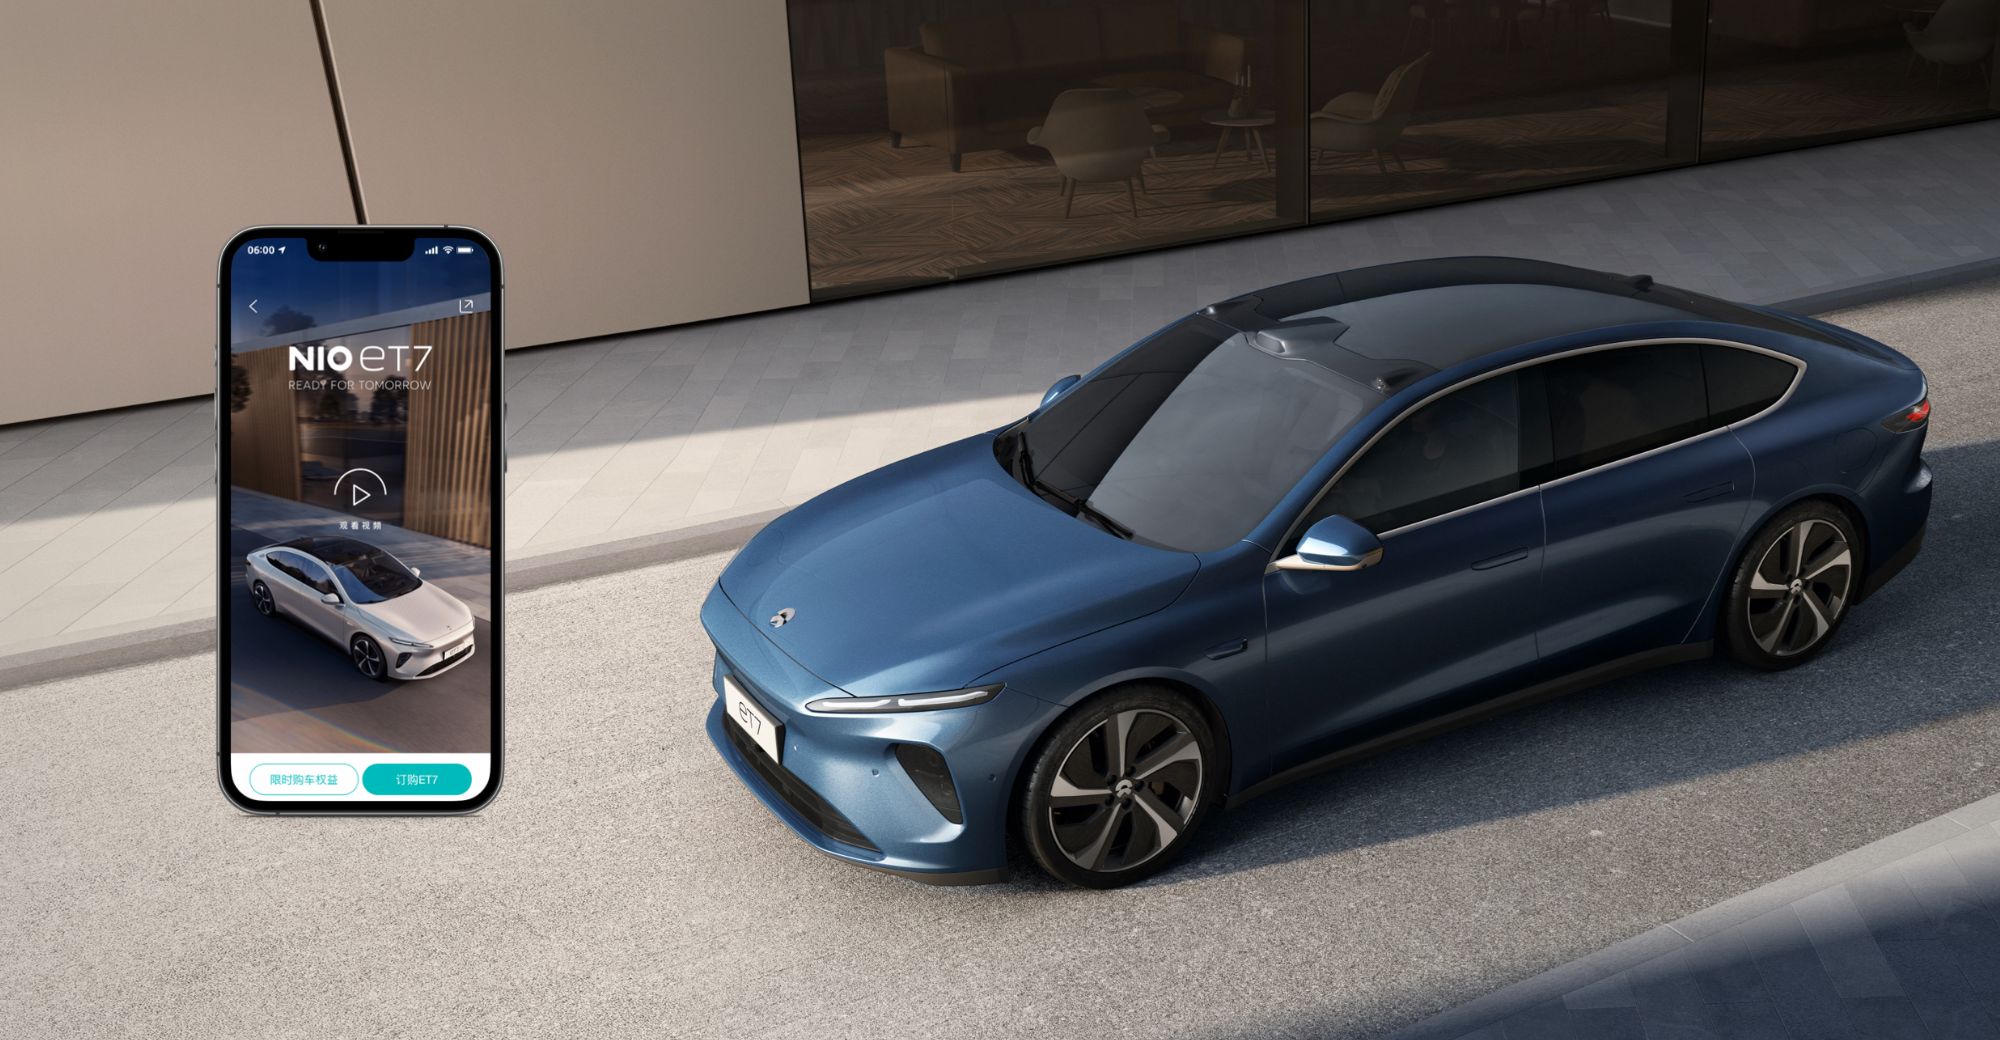 Das Ergebnis der Unzufriedenheit mit Apple-Gadgets: Der Elektroautohersteller Nio testet bereits sein erstes Smartphone